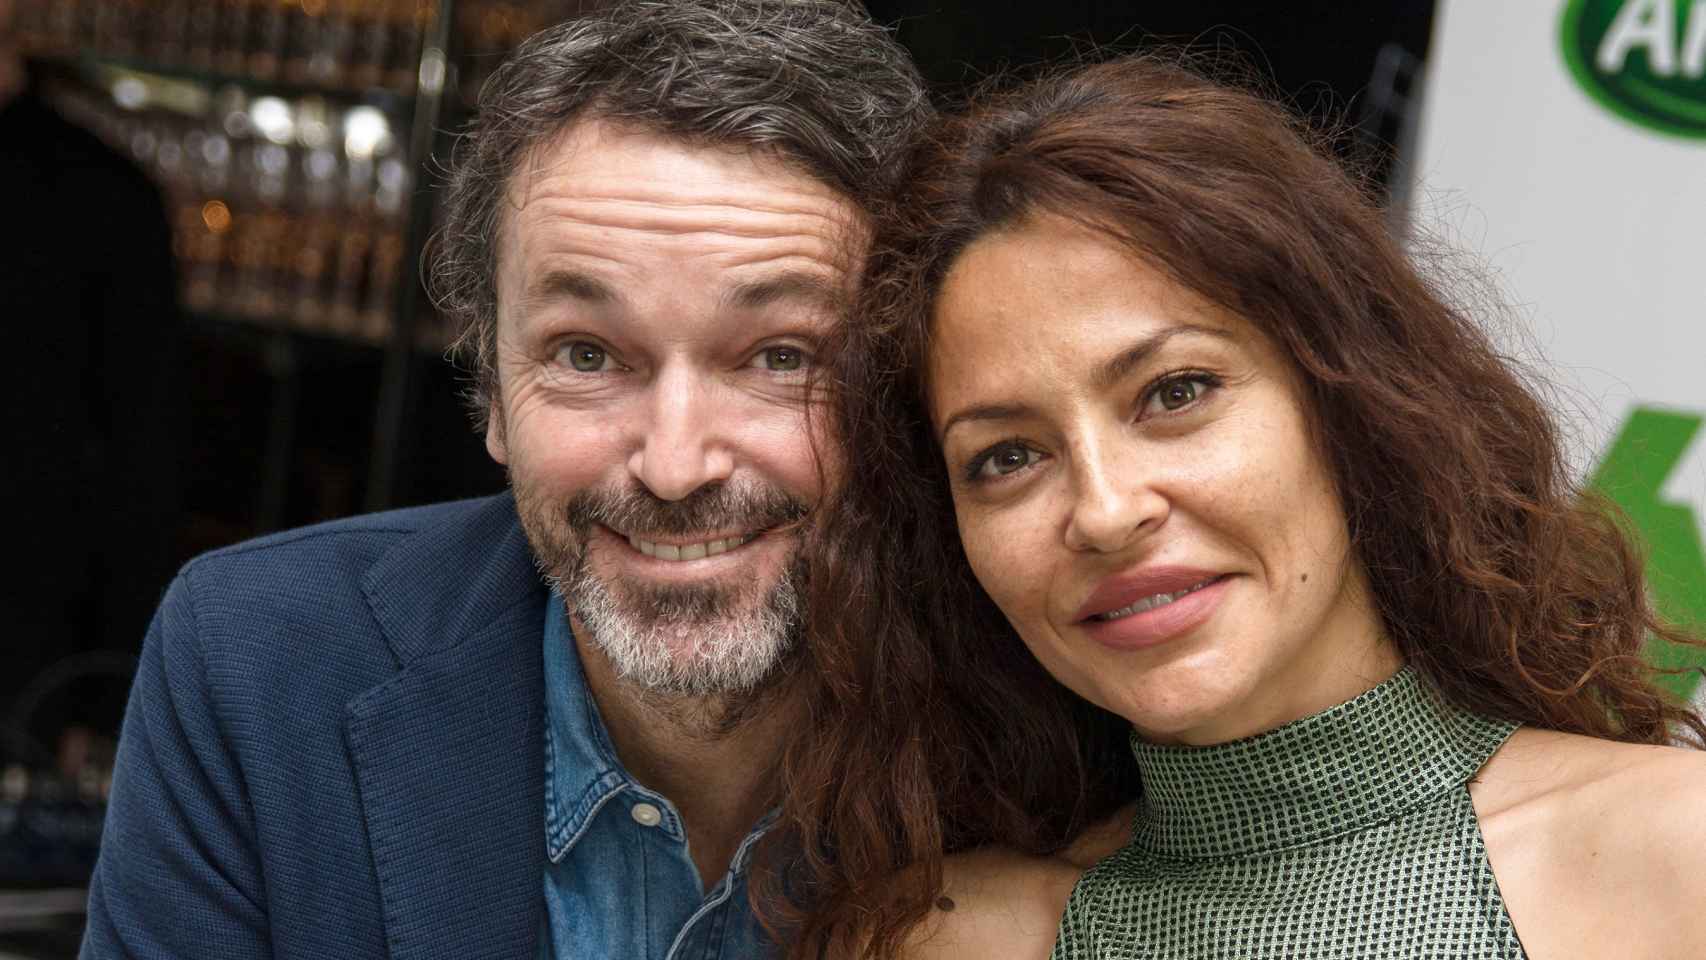 Luis Canut y su pareja sentimental, Patricia Pérez, en un acto público en abril de 2018.